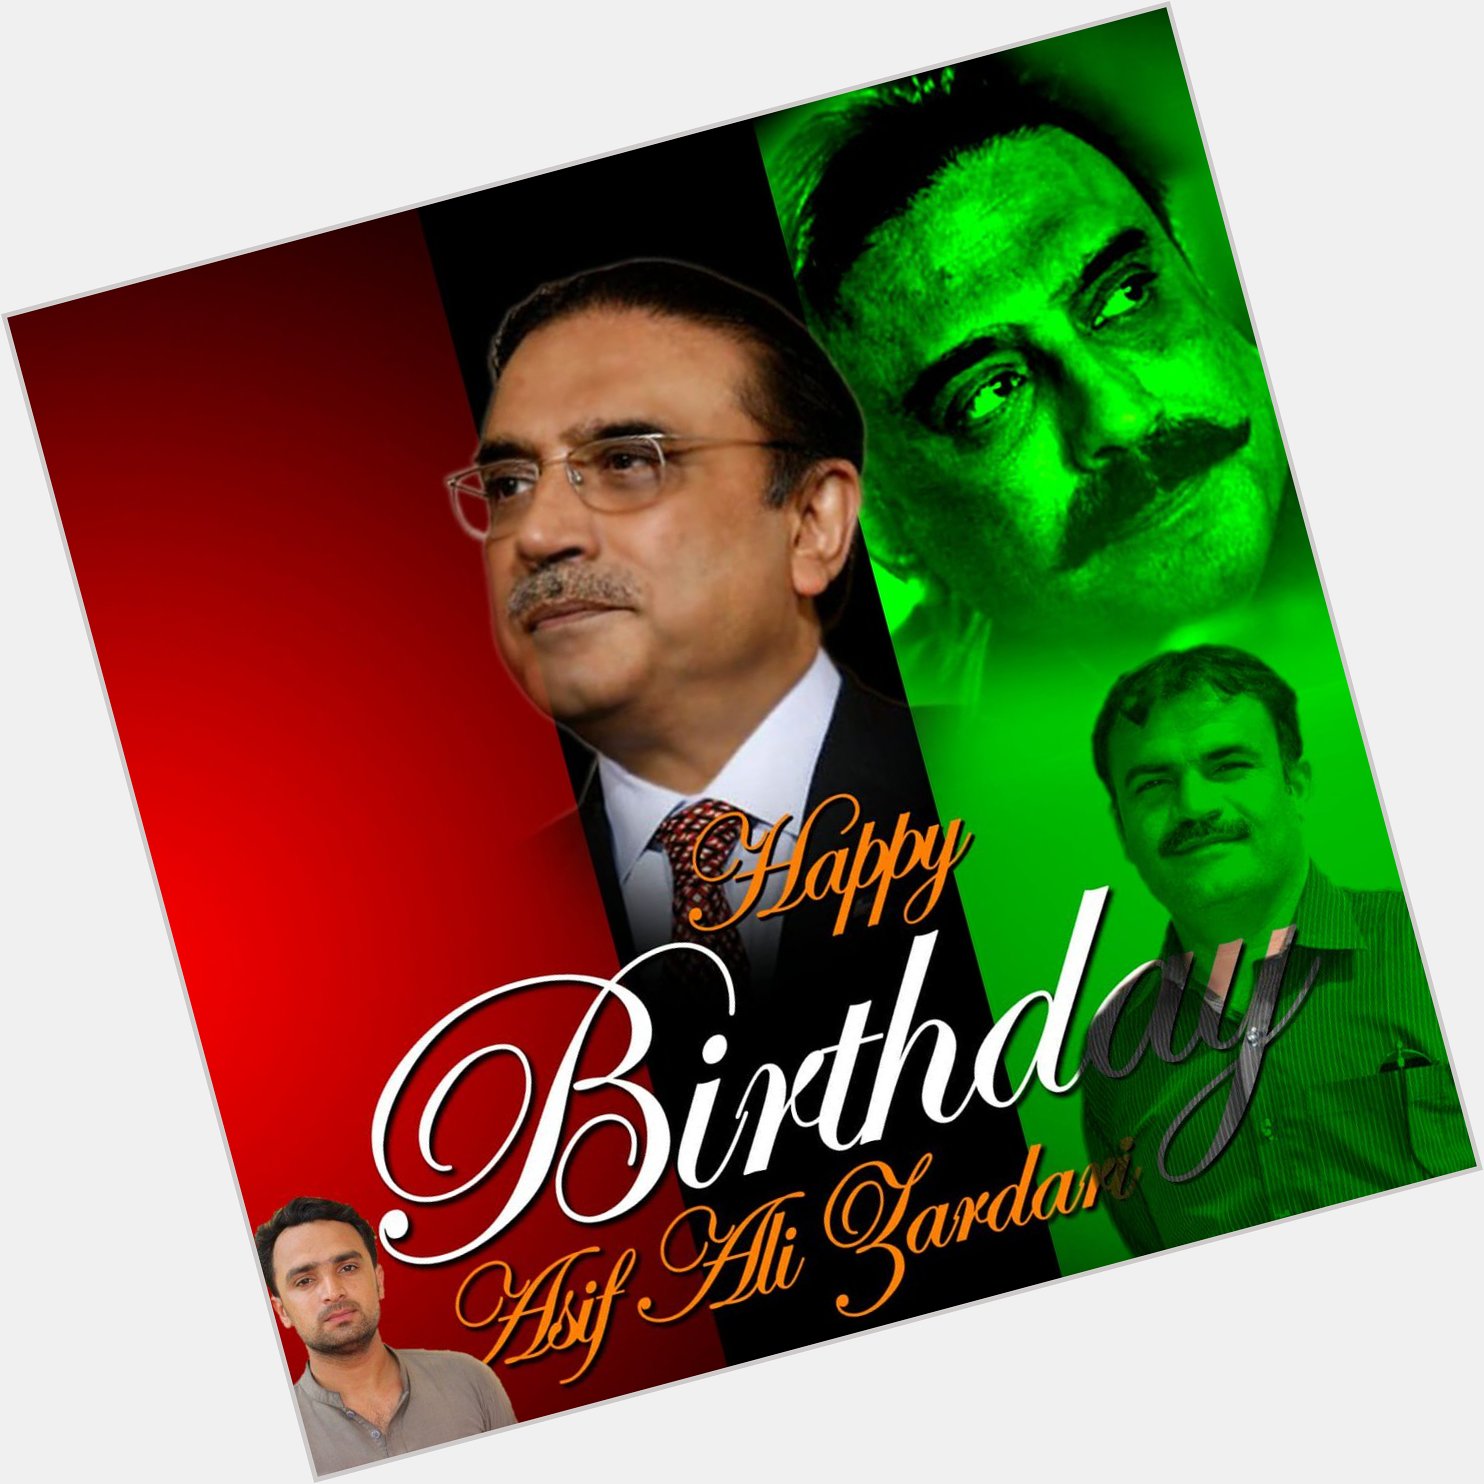 Great Asif Ali Zardari shb 
Wish u Happy birthday 